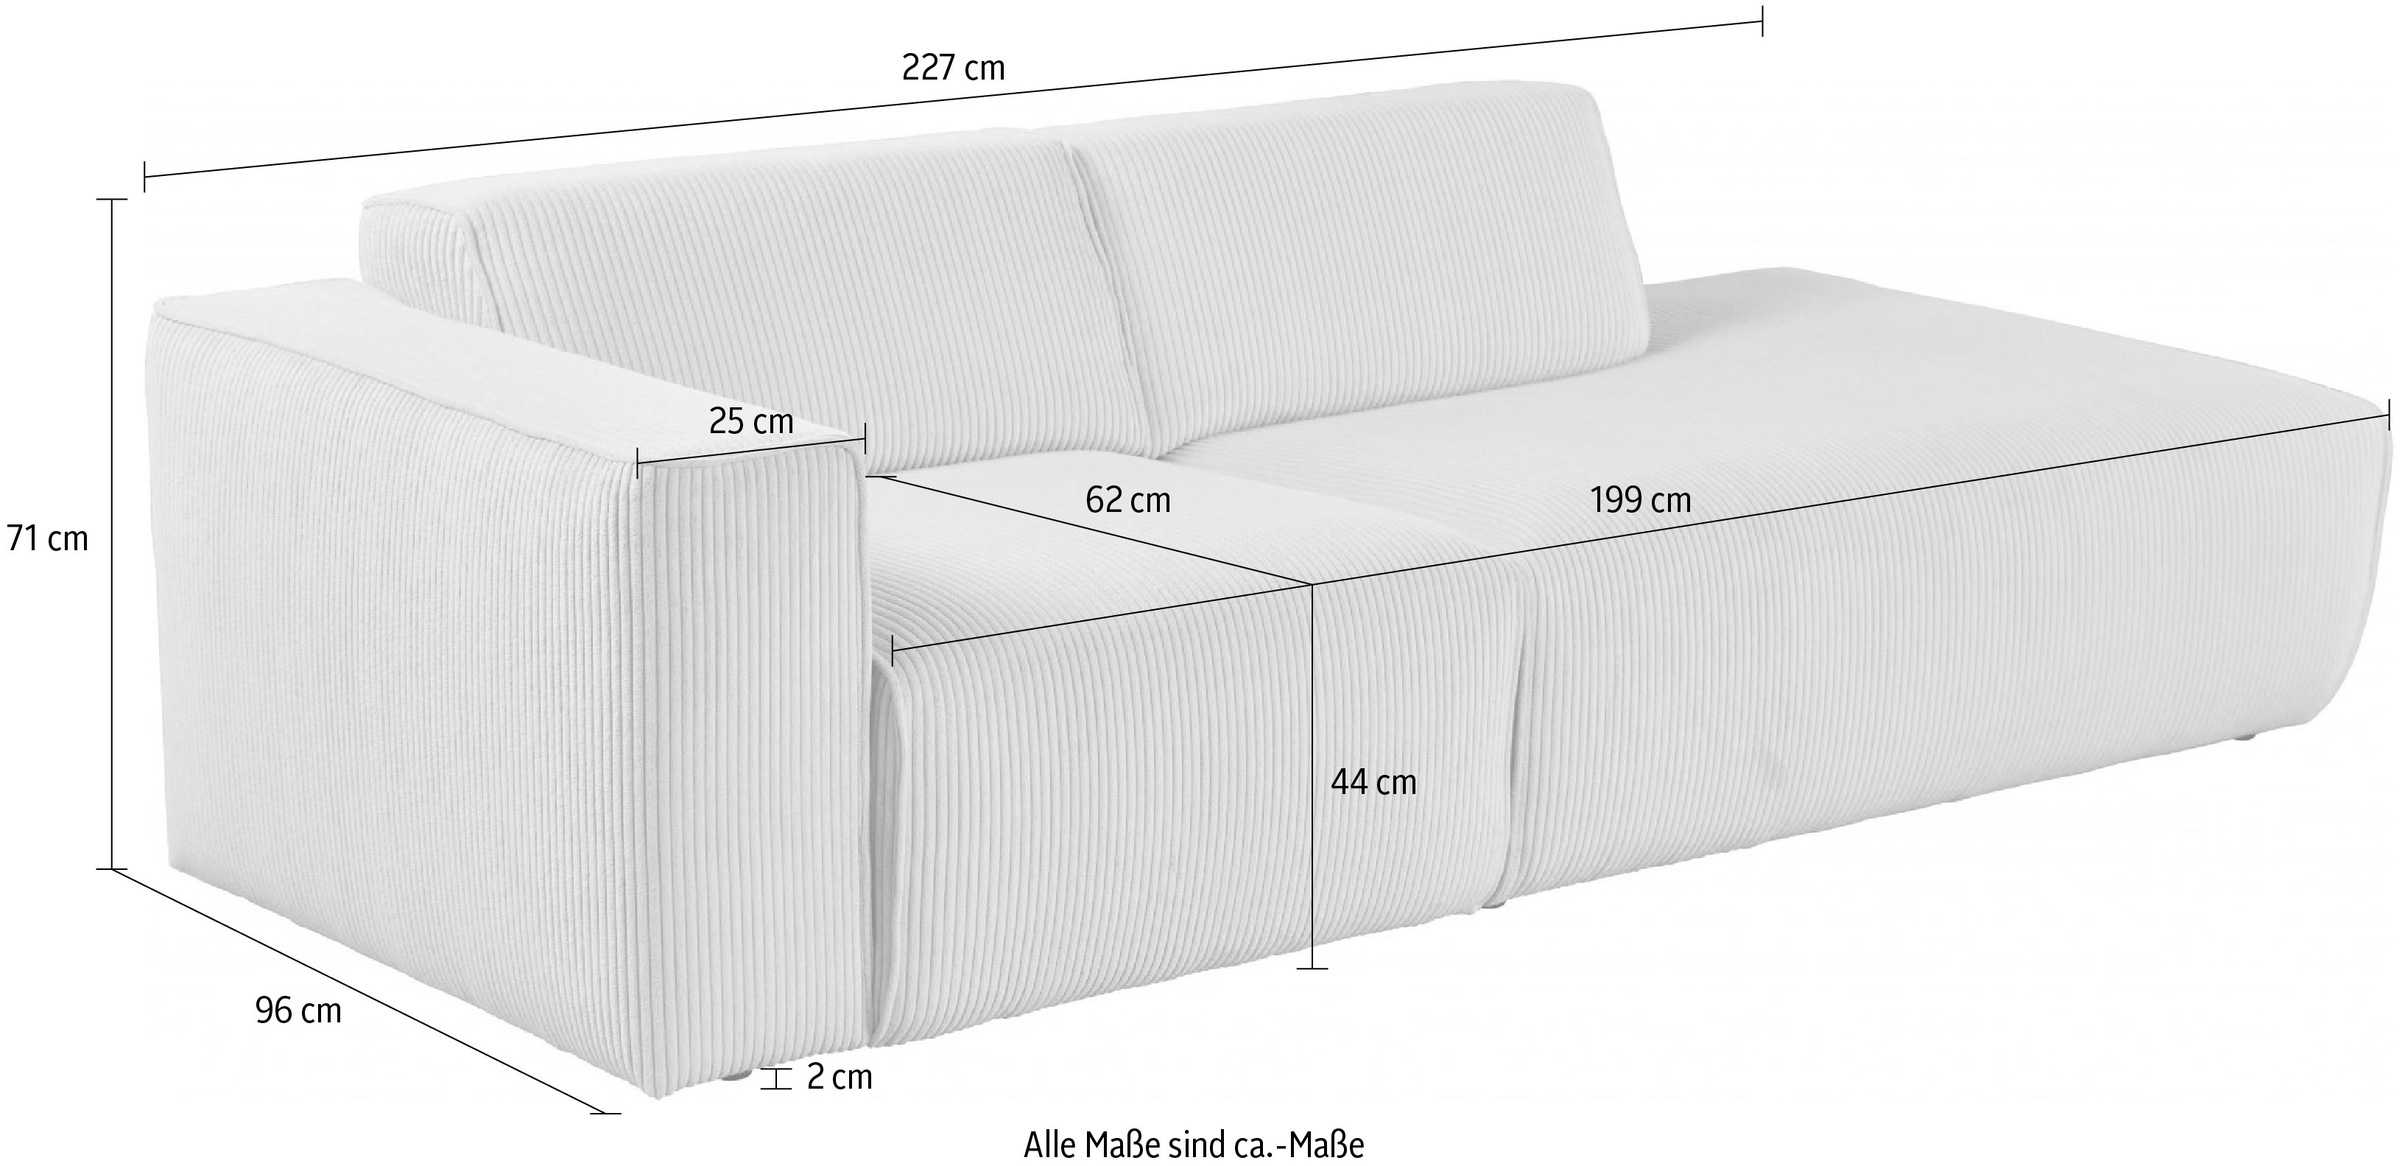 andas 2-Sitzer »Noord, 227cm,«, mit Kedernaht, Cord, Luxus-Microfaser, Struktur, Struktur grob